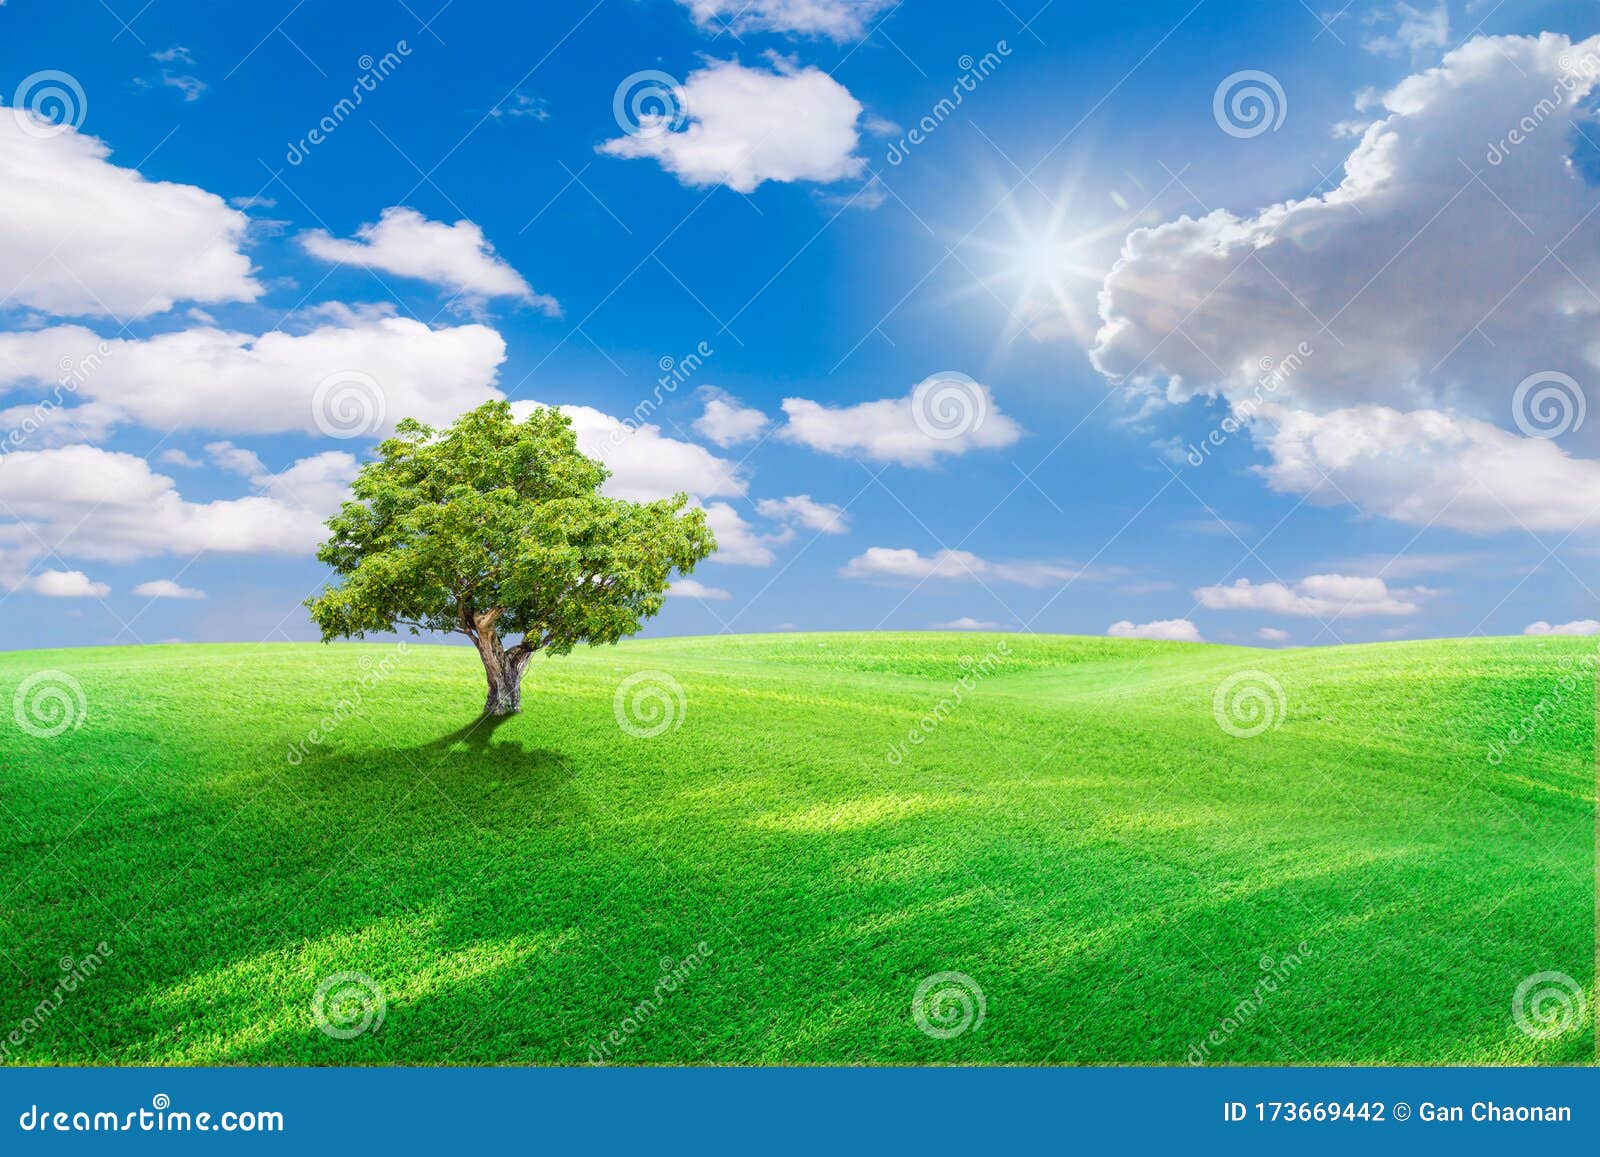 Những bãi cỏ xanh mơn mởn, đặt dưới bầu trời xanh dương thanh tịnh trong hình ảnh này sẽ đưa bạn đến gần hơn với thiên nhiên và cảm giác sự sống đang tràn đầy quanh ta.